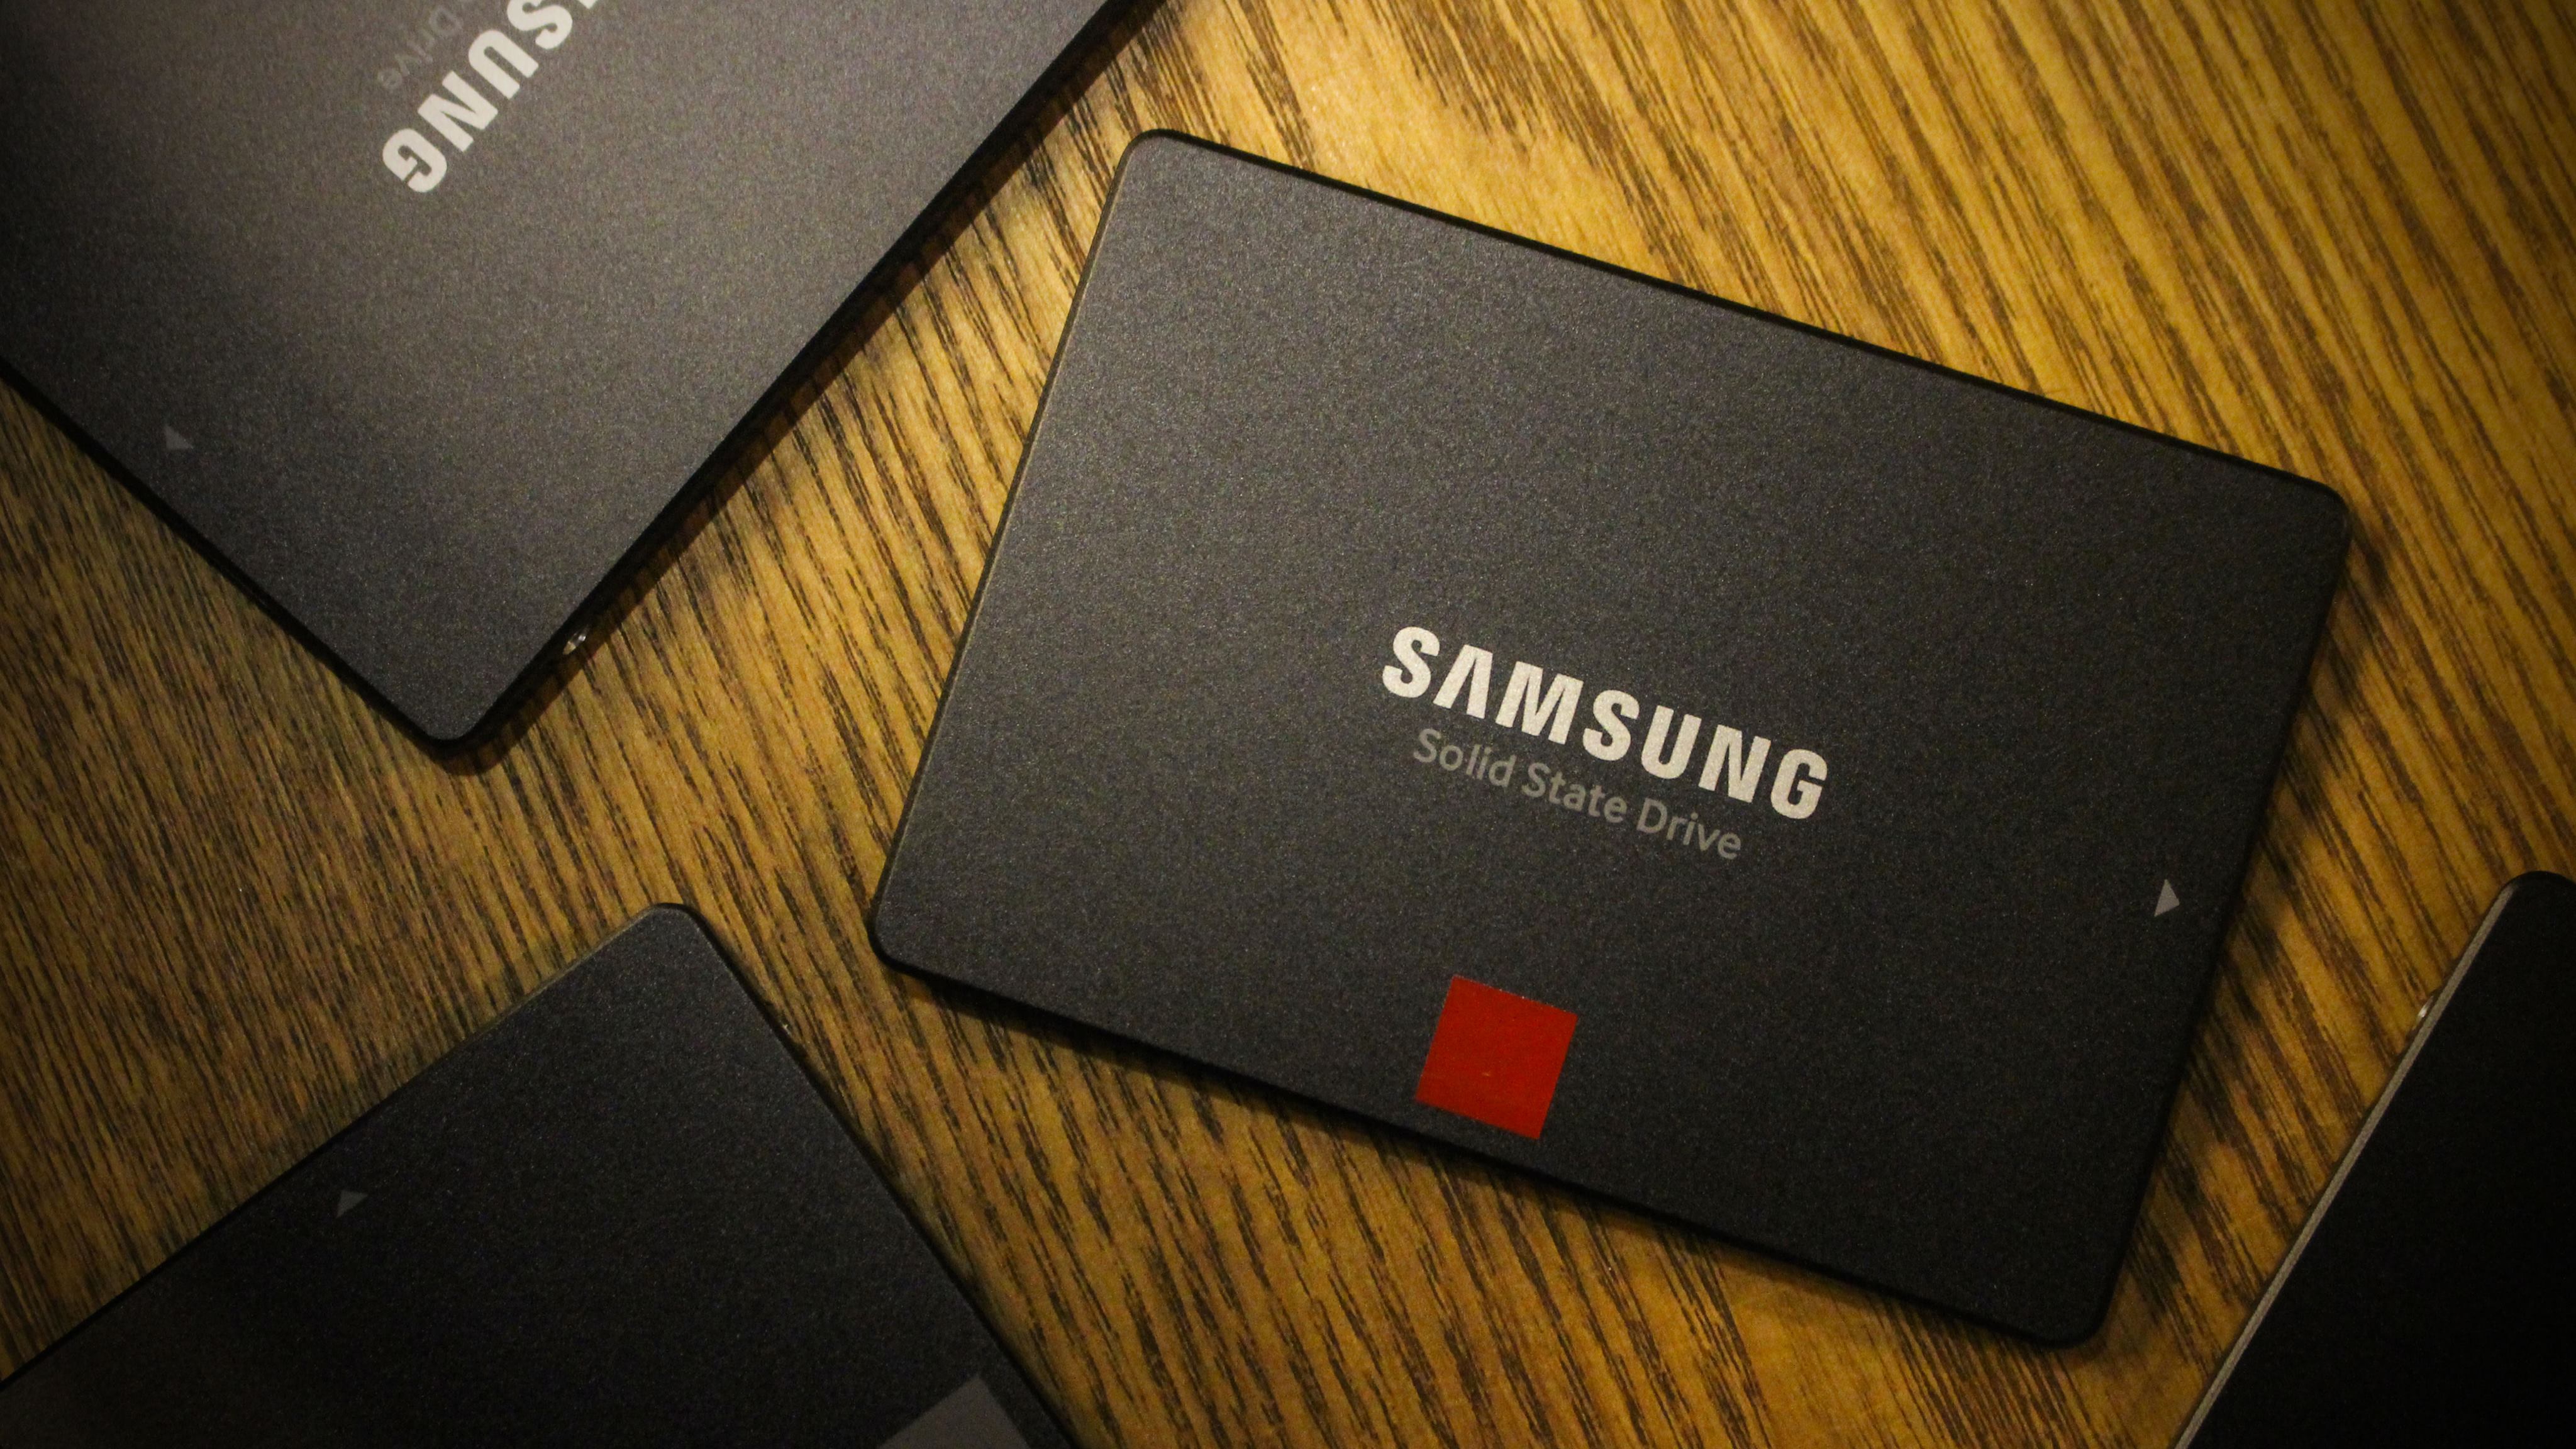 Dòng sản phẩm Samsung Advances SATA với ổ cứng thể rắn 860 PRO và 860 EVO sử dụng chip V-NAND